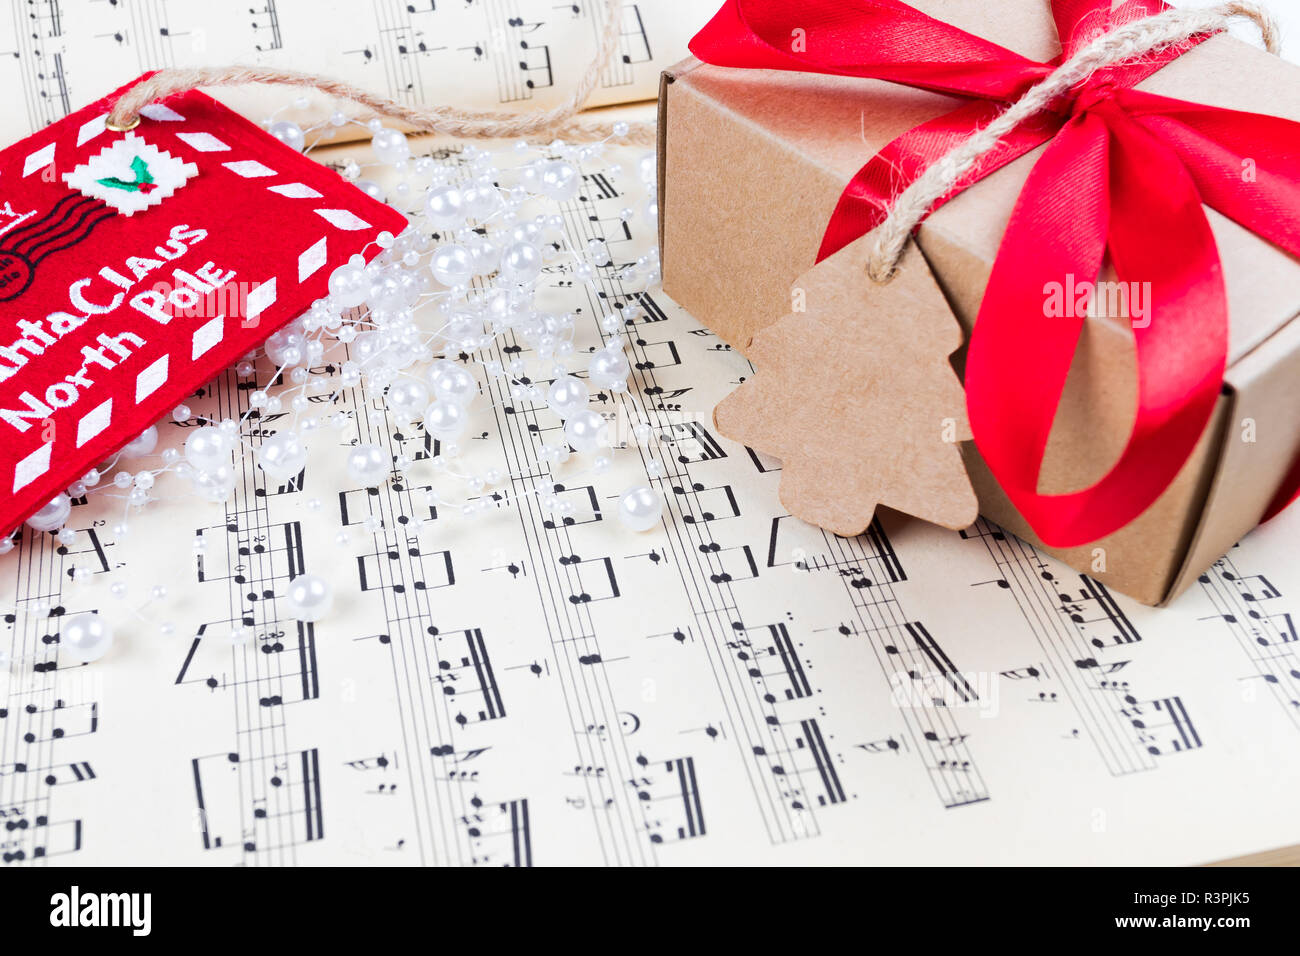 Weihnachten Geschenk oder präsent mit Label und Garn auf Musik. Rote  Schleife. Notizen. Schreiben Claus der Nordpol zum Weihnachtsmann  Stockfotografie - Alamy